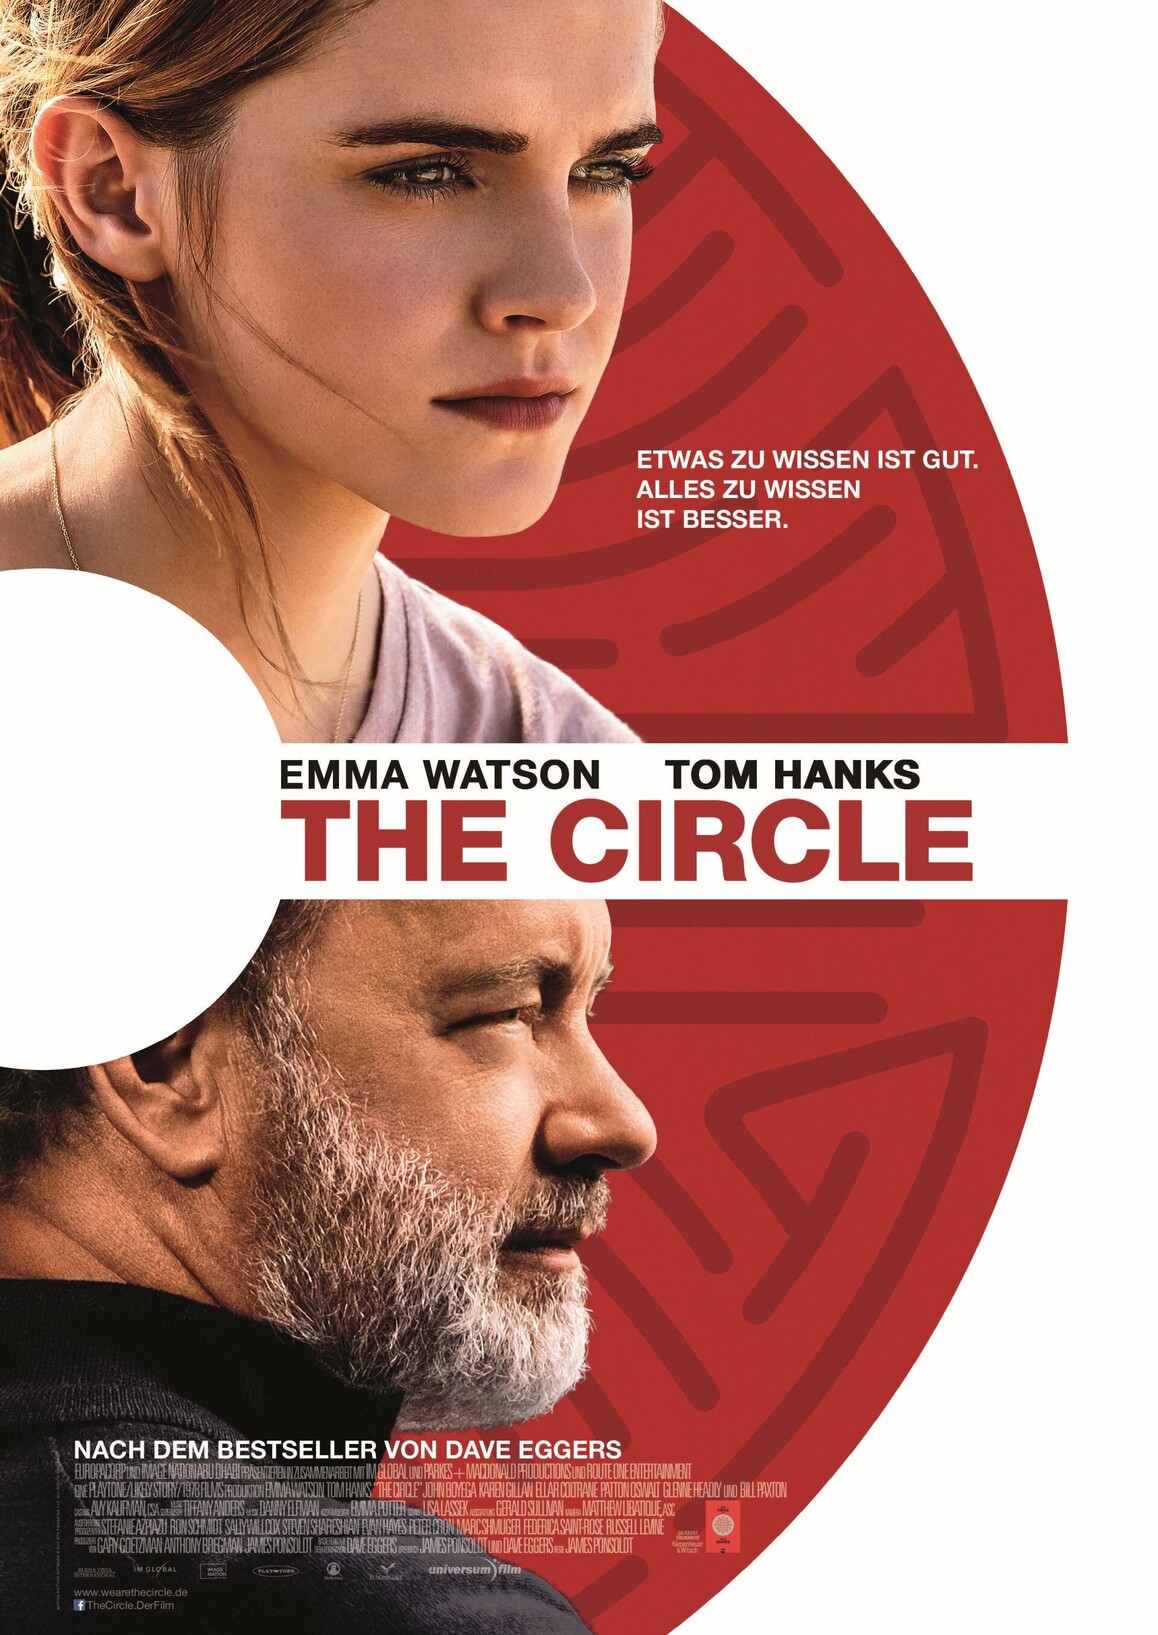 Filmplakat zu The Circle mit Tom Hanks und Emma Watson.